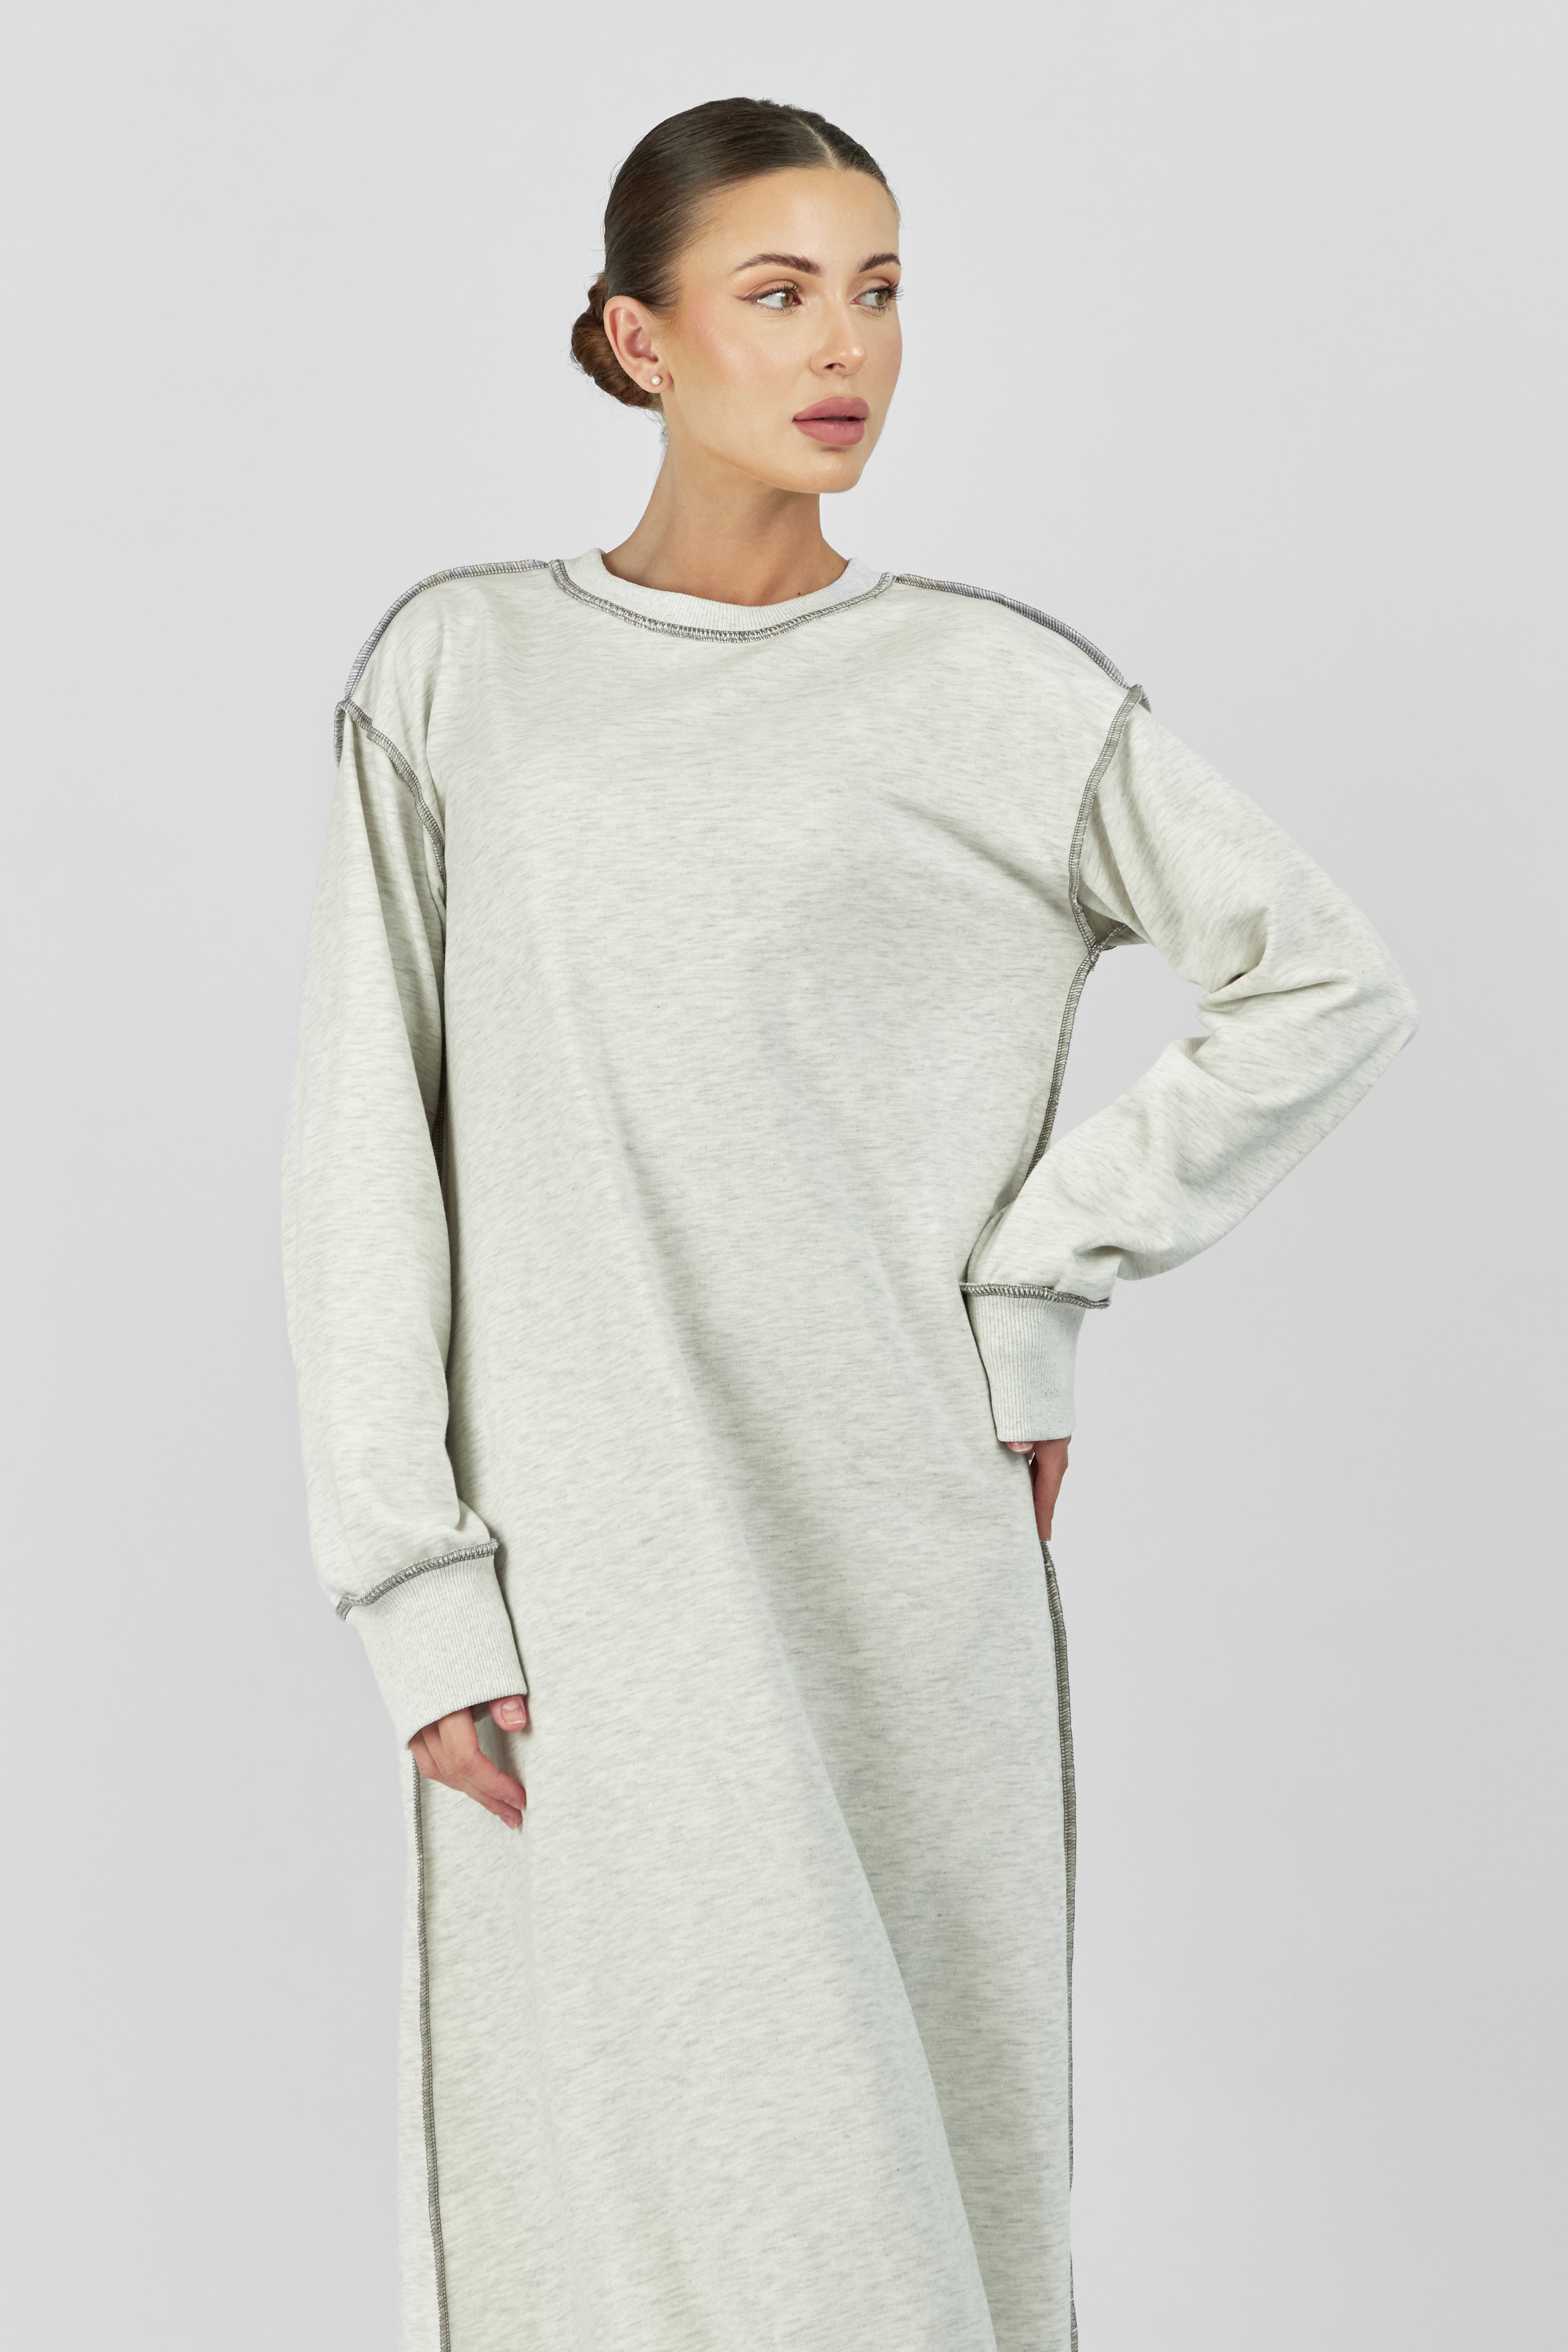 US - Contrast Stitch Dress - Warm Grey